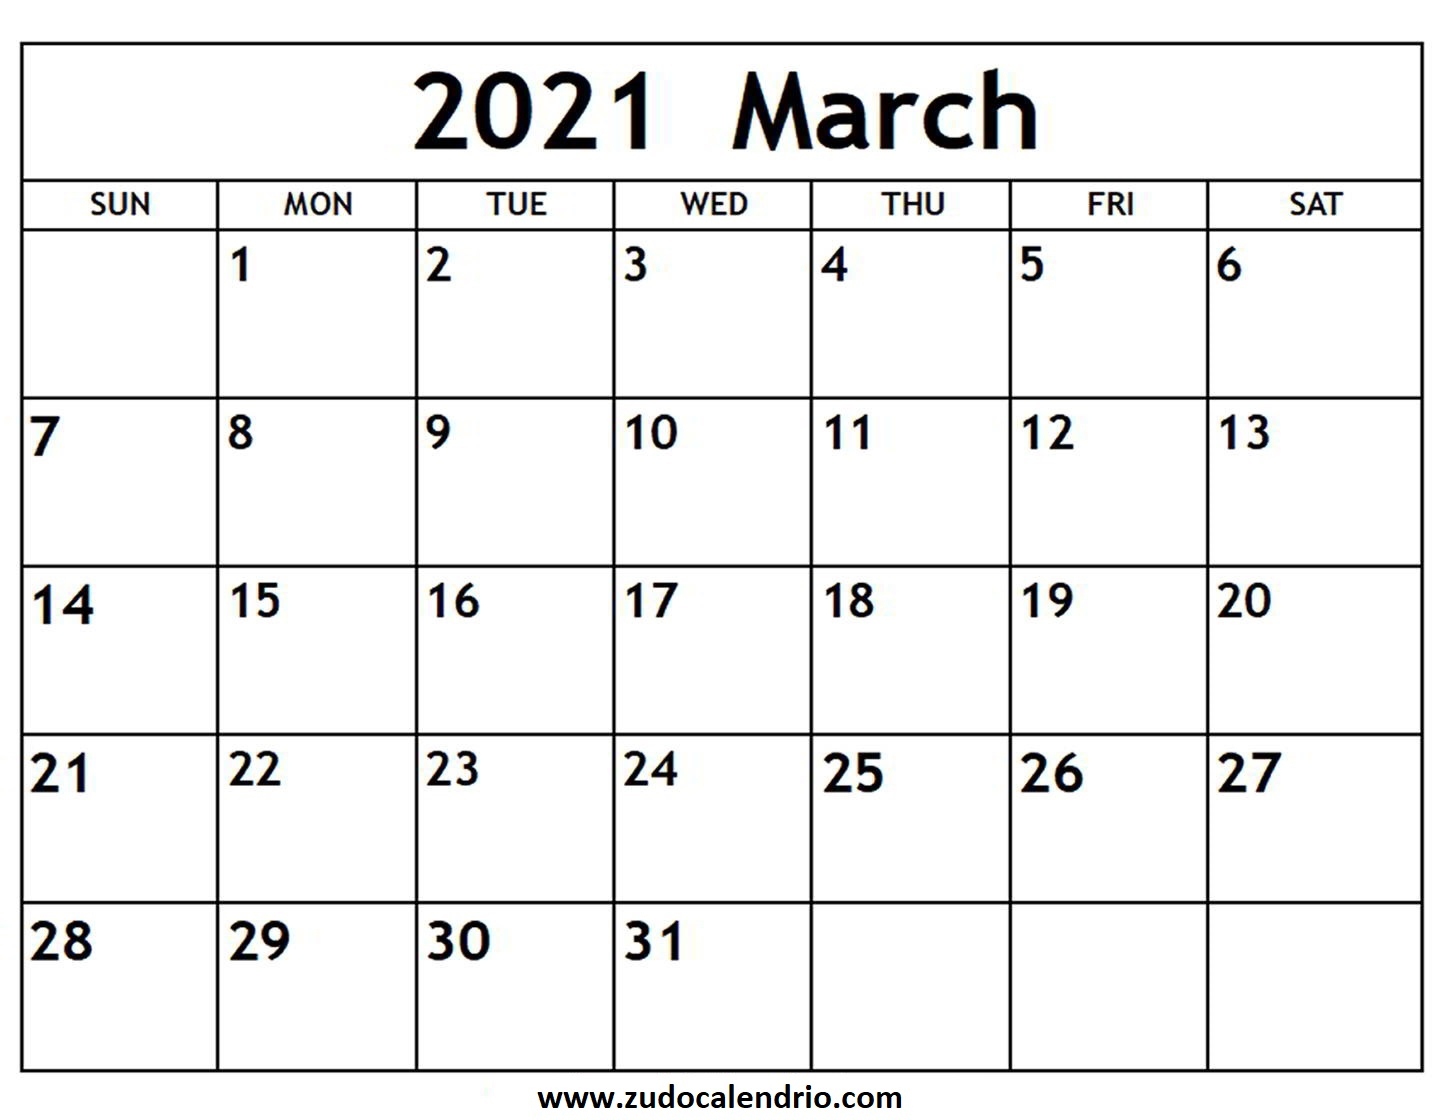 March 2021 Calendar Planner Zudocalendrio